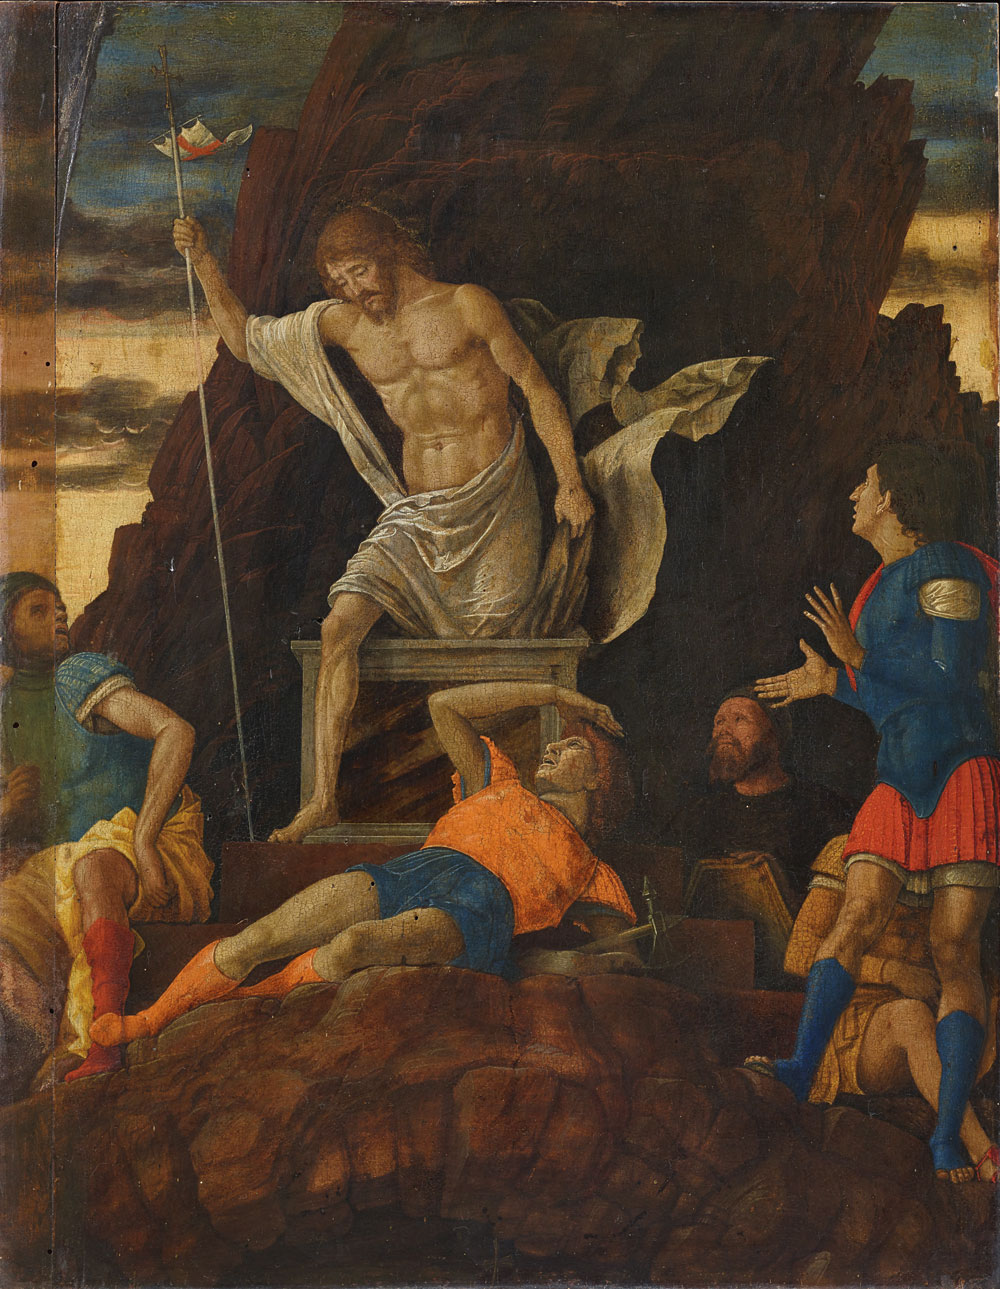 Il pubblico potrà assistere in diretta al restauro della Resurrezione attribuita a Mantegna all'Accademia Carrara